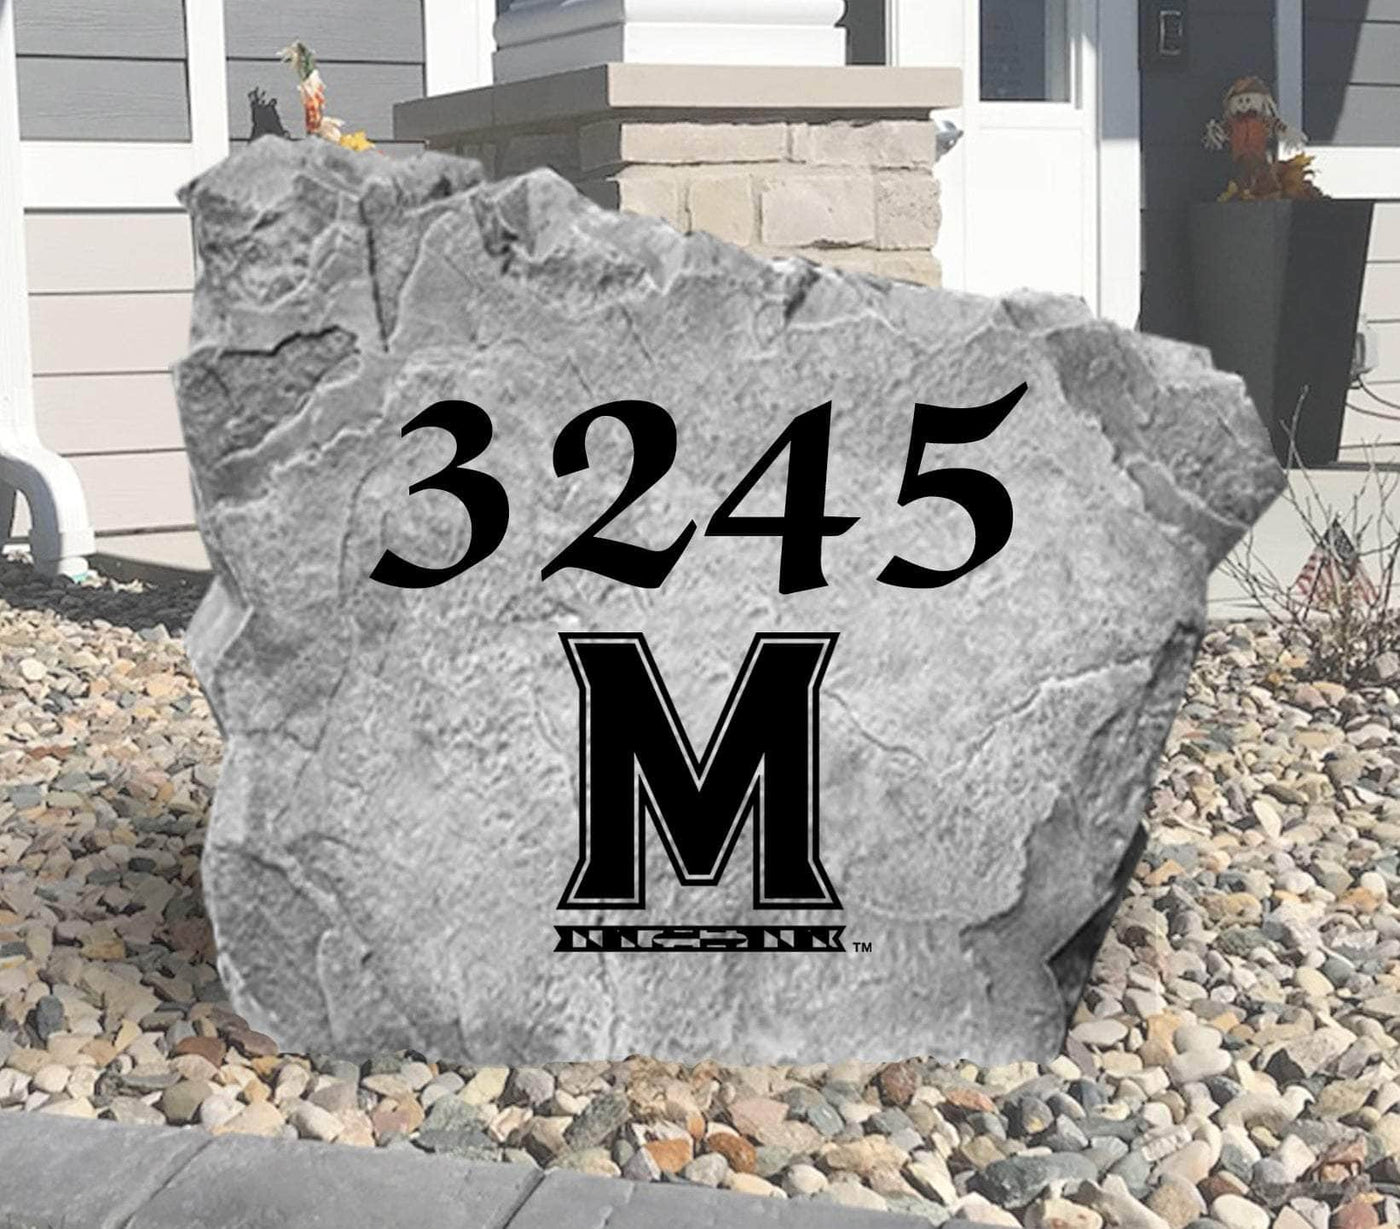 University of Maryland Address Stone